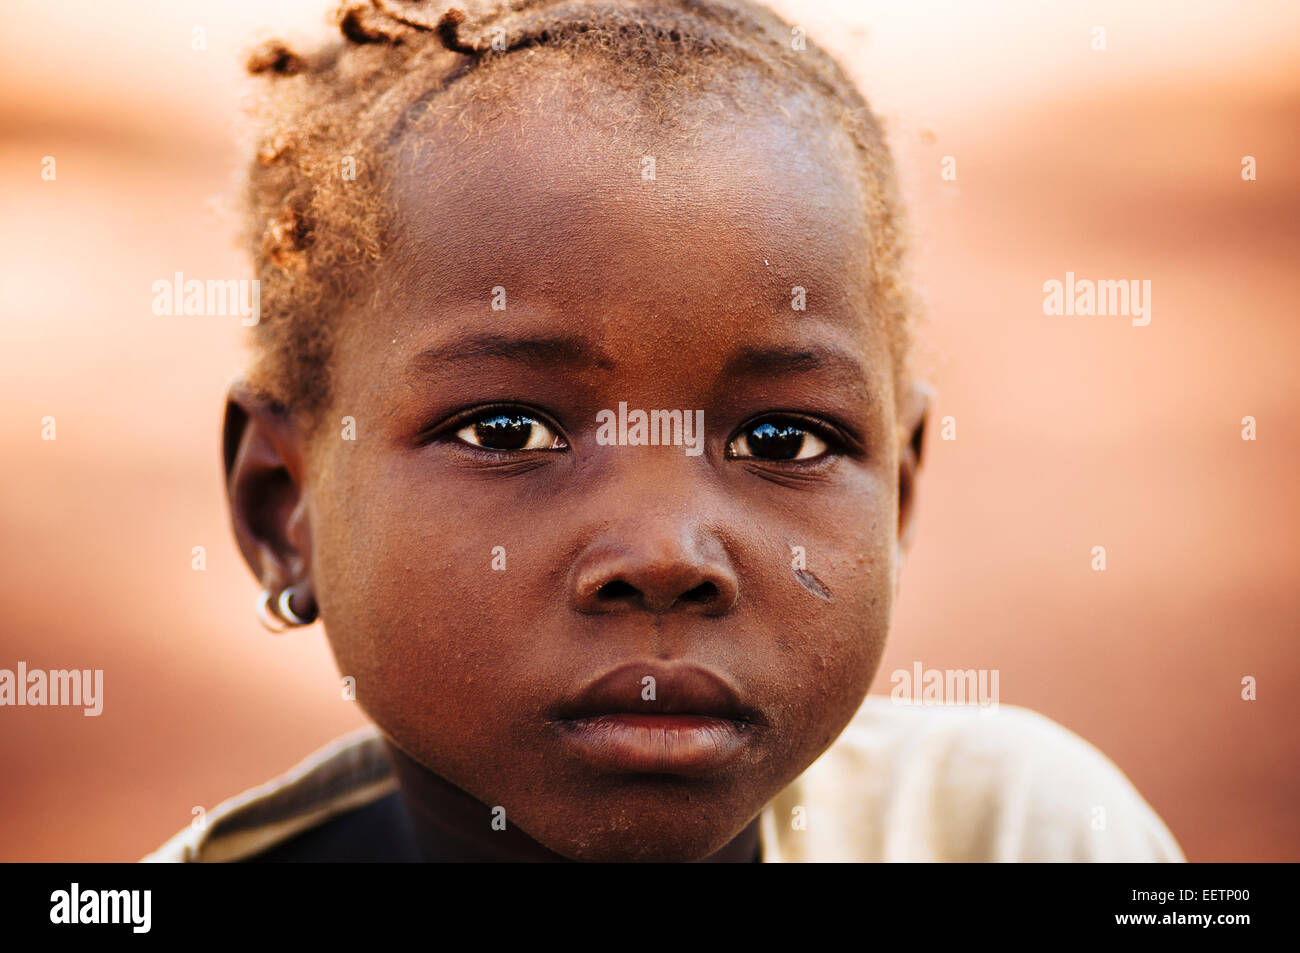 Portrait d'une jeune fille burkinabé. Burkina Faso Banque D'Images